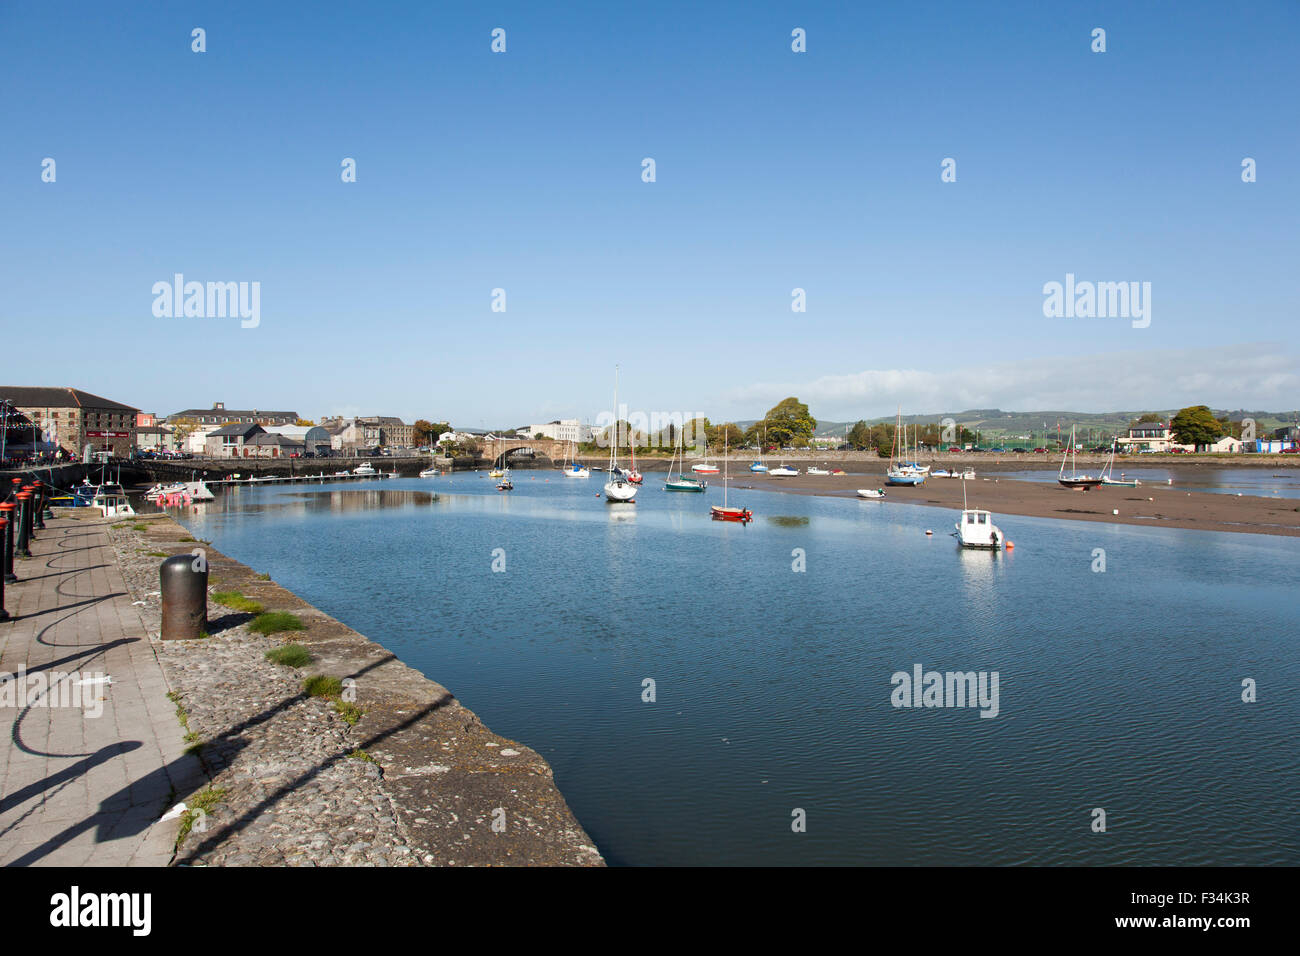 Davitts Quay, Dungarvan in County Waterford. Diese Boote sind in niedrigen Gewässern gegen einen klaren, blauen Himmel und Stille Wasser vertäut. Stockfoto